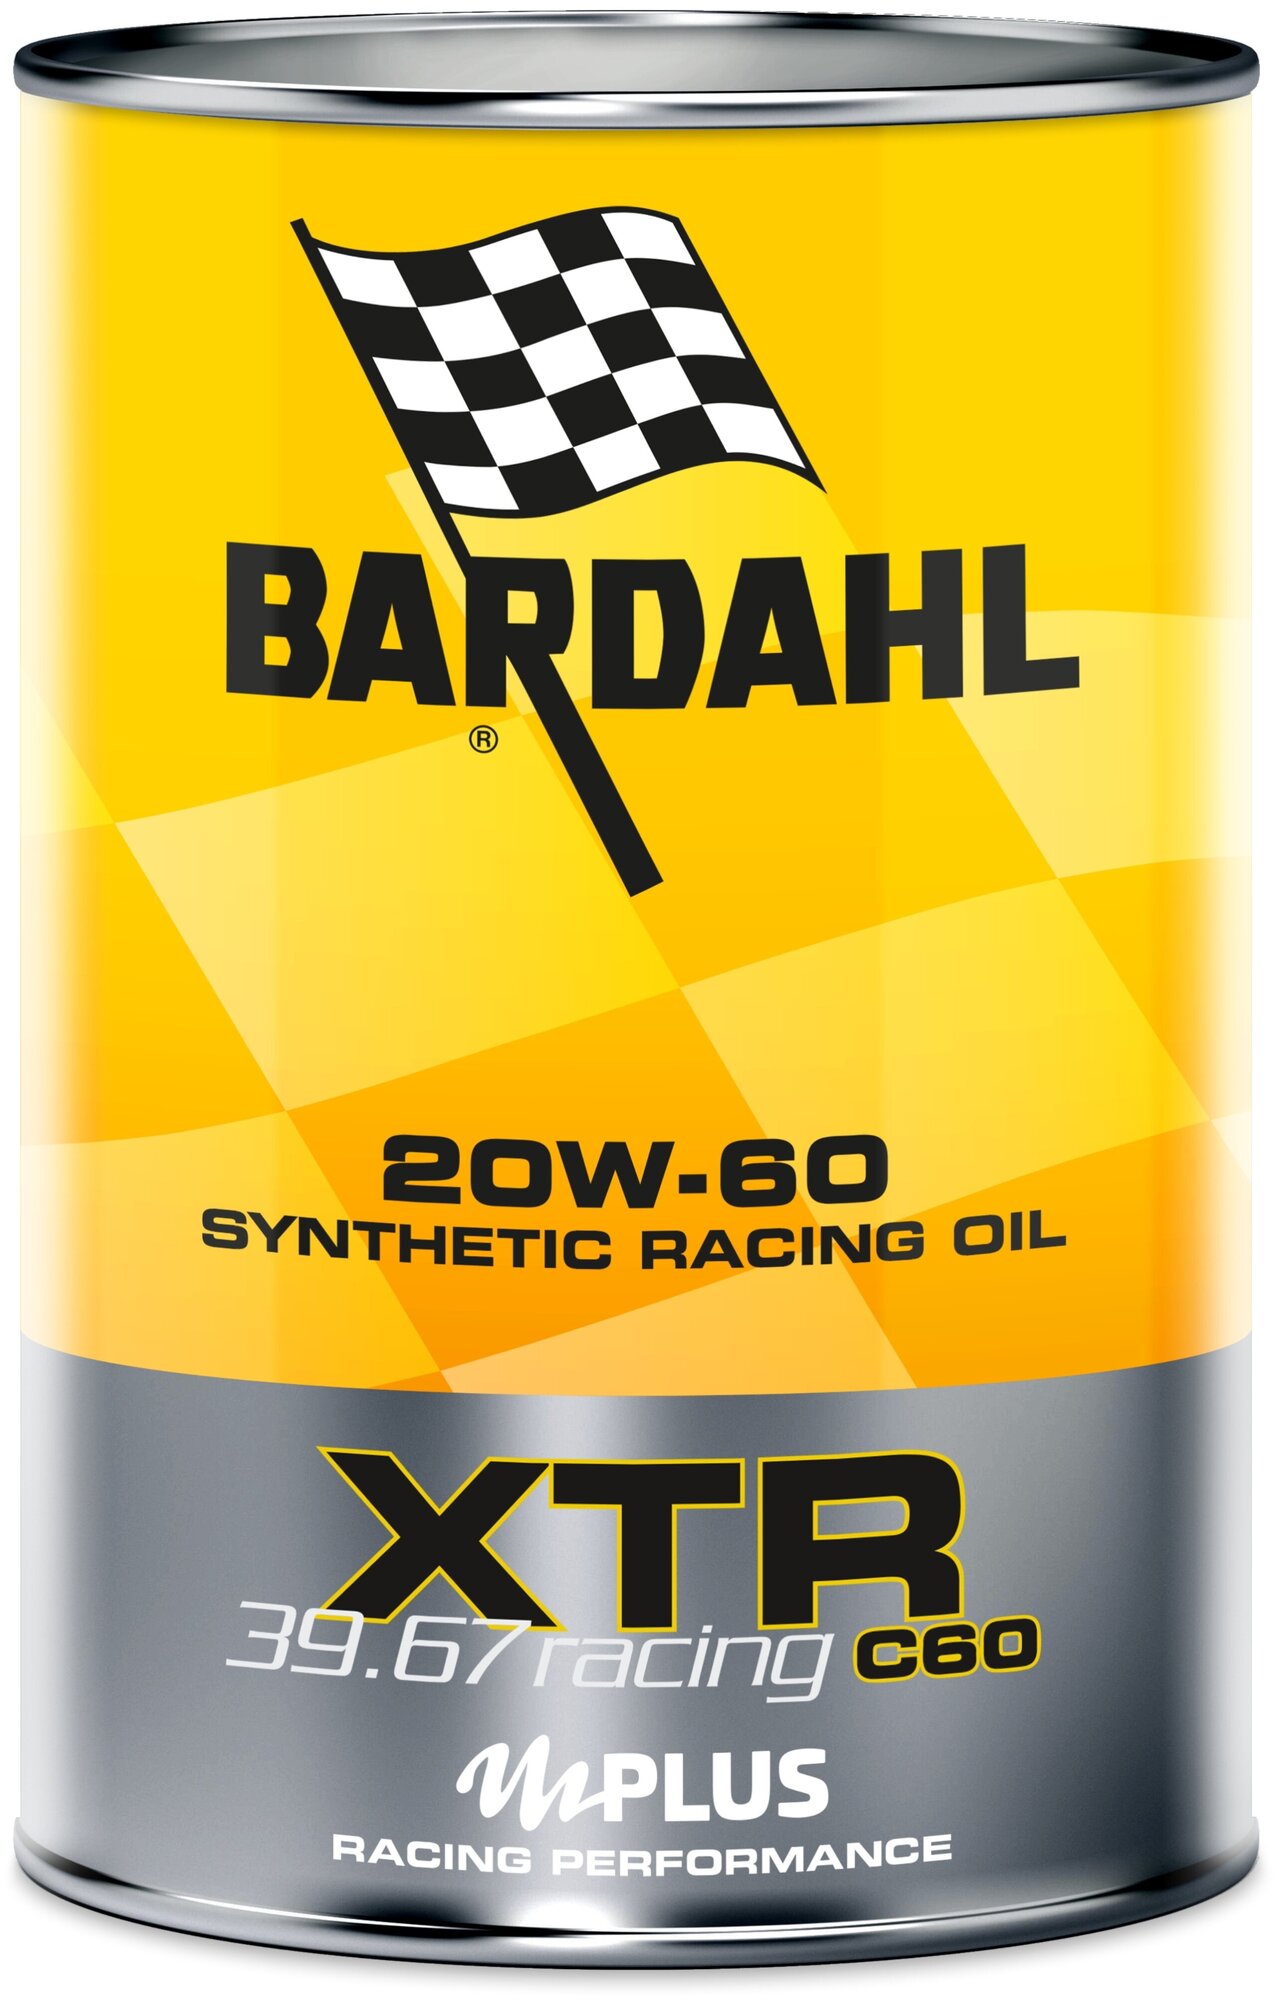 20w60 xtr c60 racing 39.67 1l (специализированное синт. моторное масло) bardahl 318039